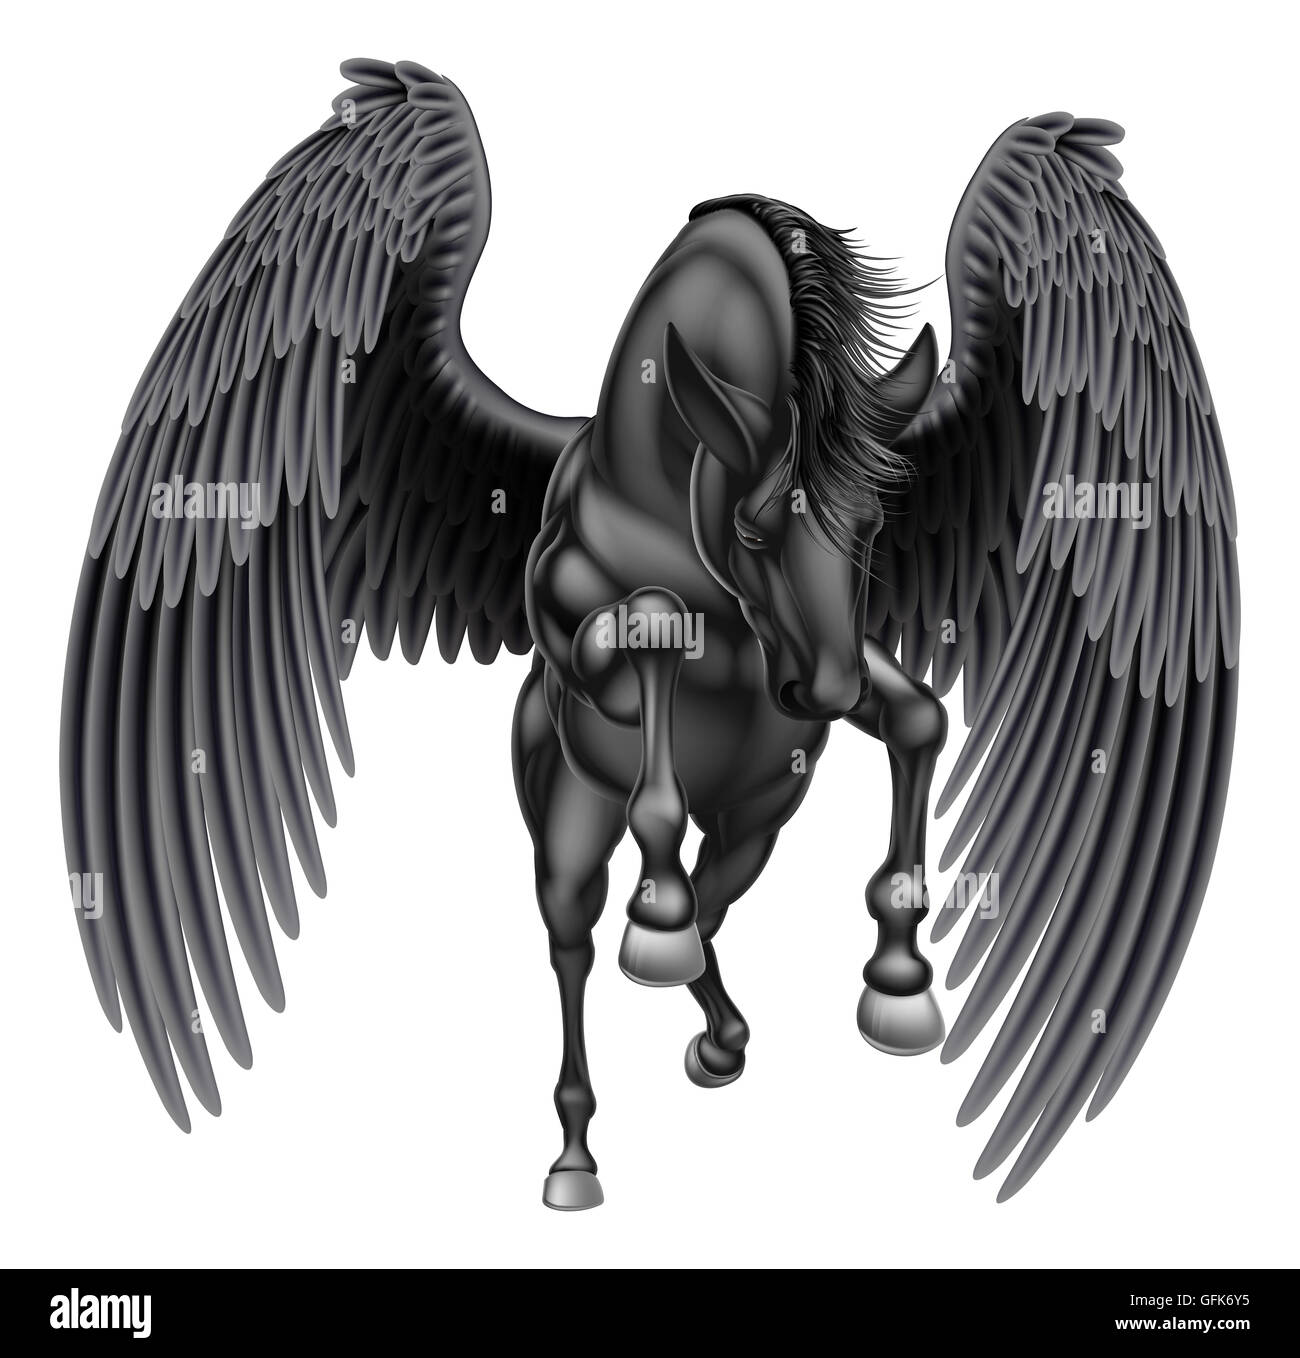 Una illustrazione di un nero pegasus mitologico cavallo alato allevamento sulle zampe posteriori o acceso o il salto visto dalla parte anteriore Foto Stock